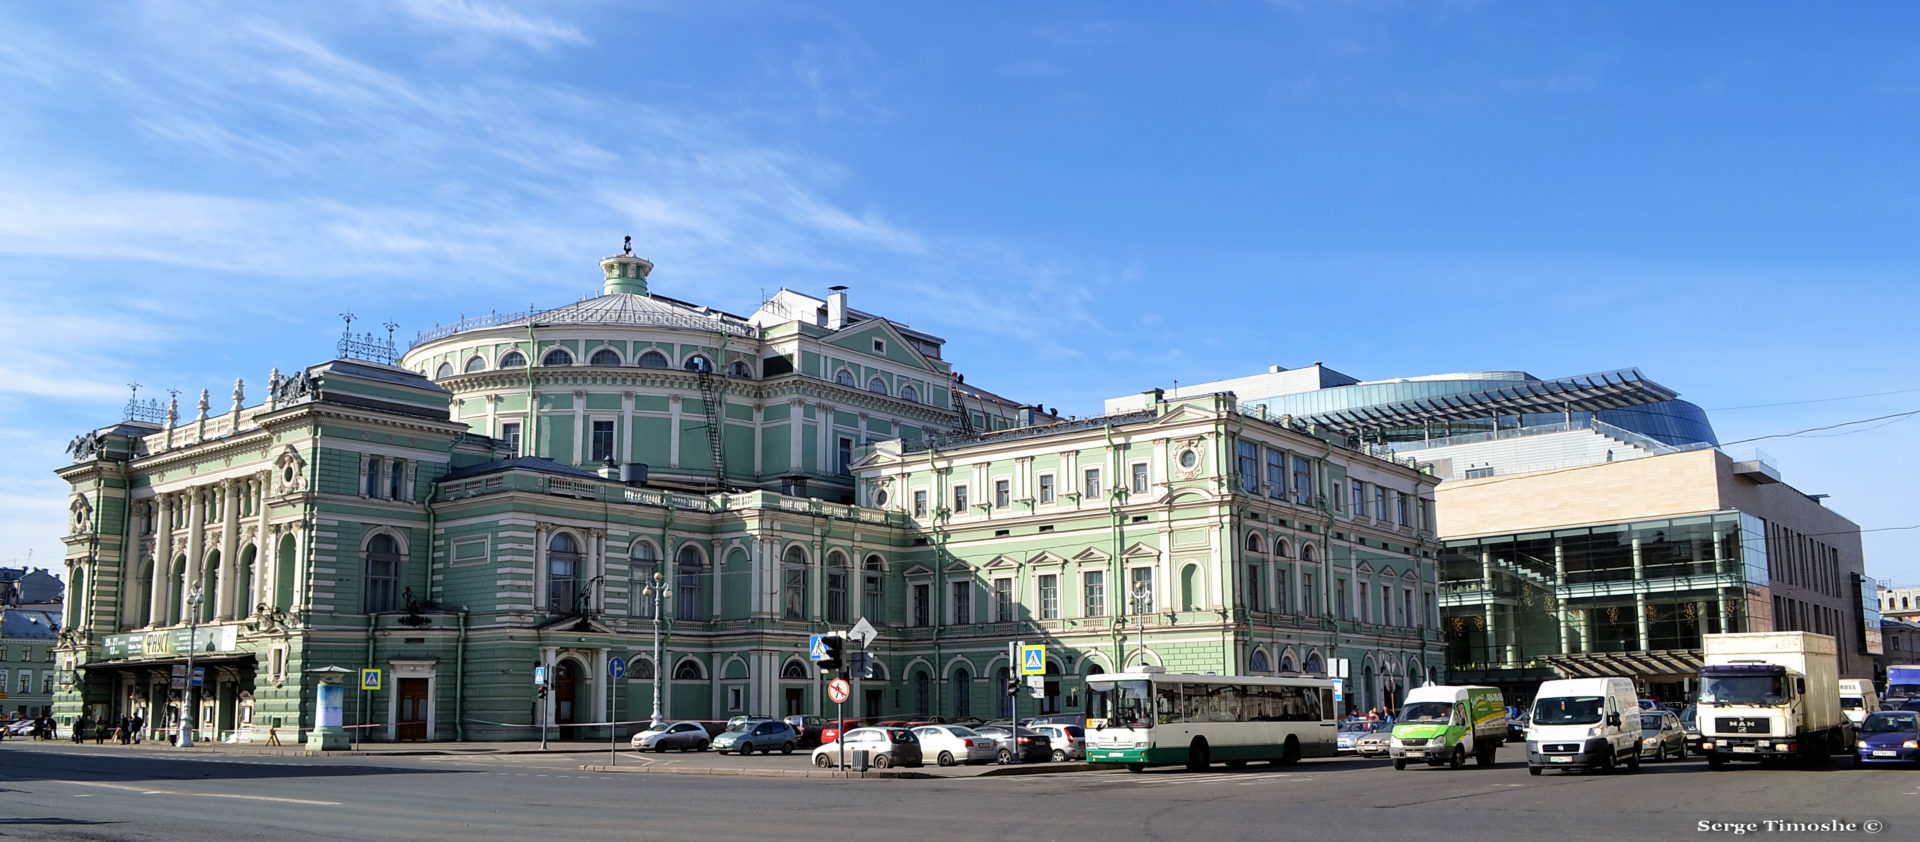 6. Мариинский театр в Санкт-Петербурге является одним из самых известных театров оперы и балета не только в России, но и во всем мире. Год основания – 1783.